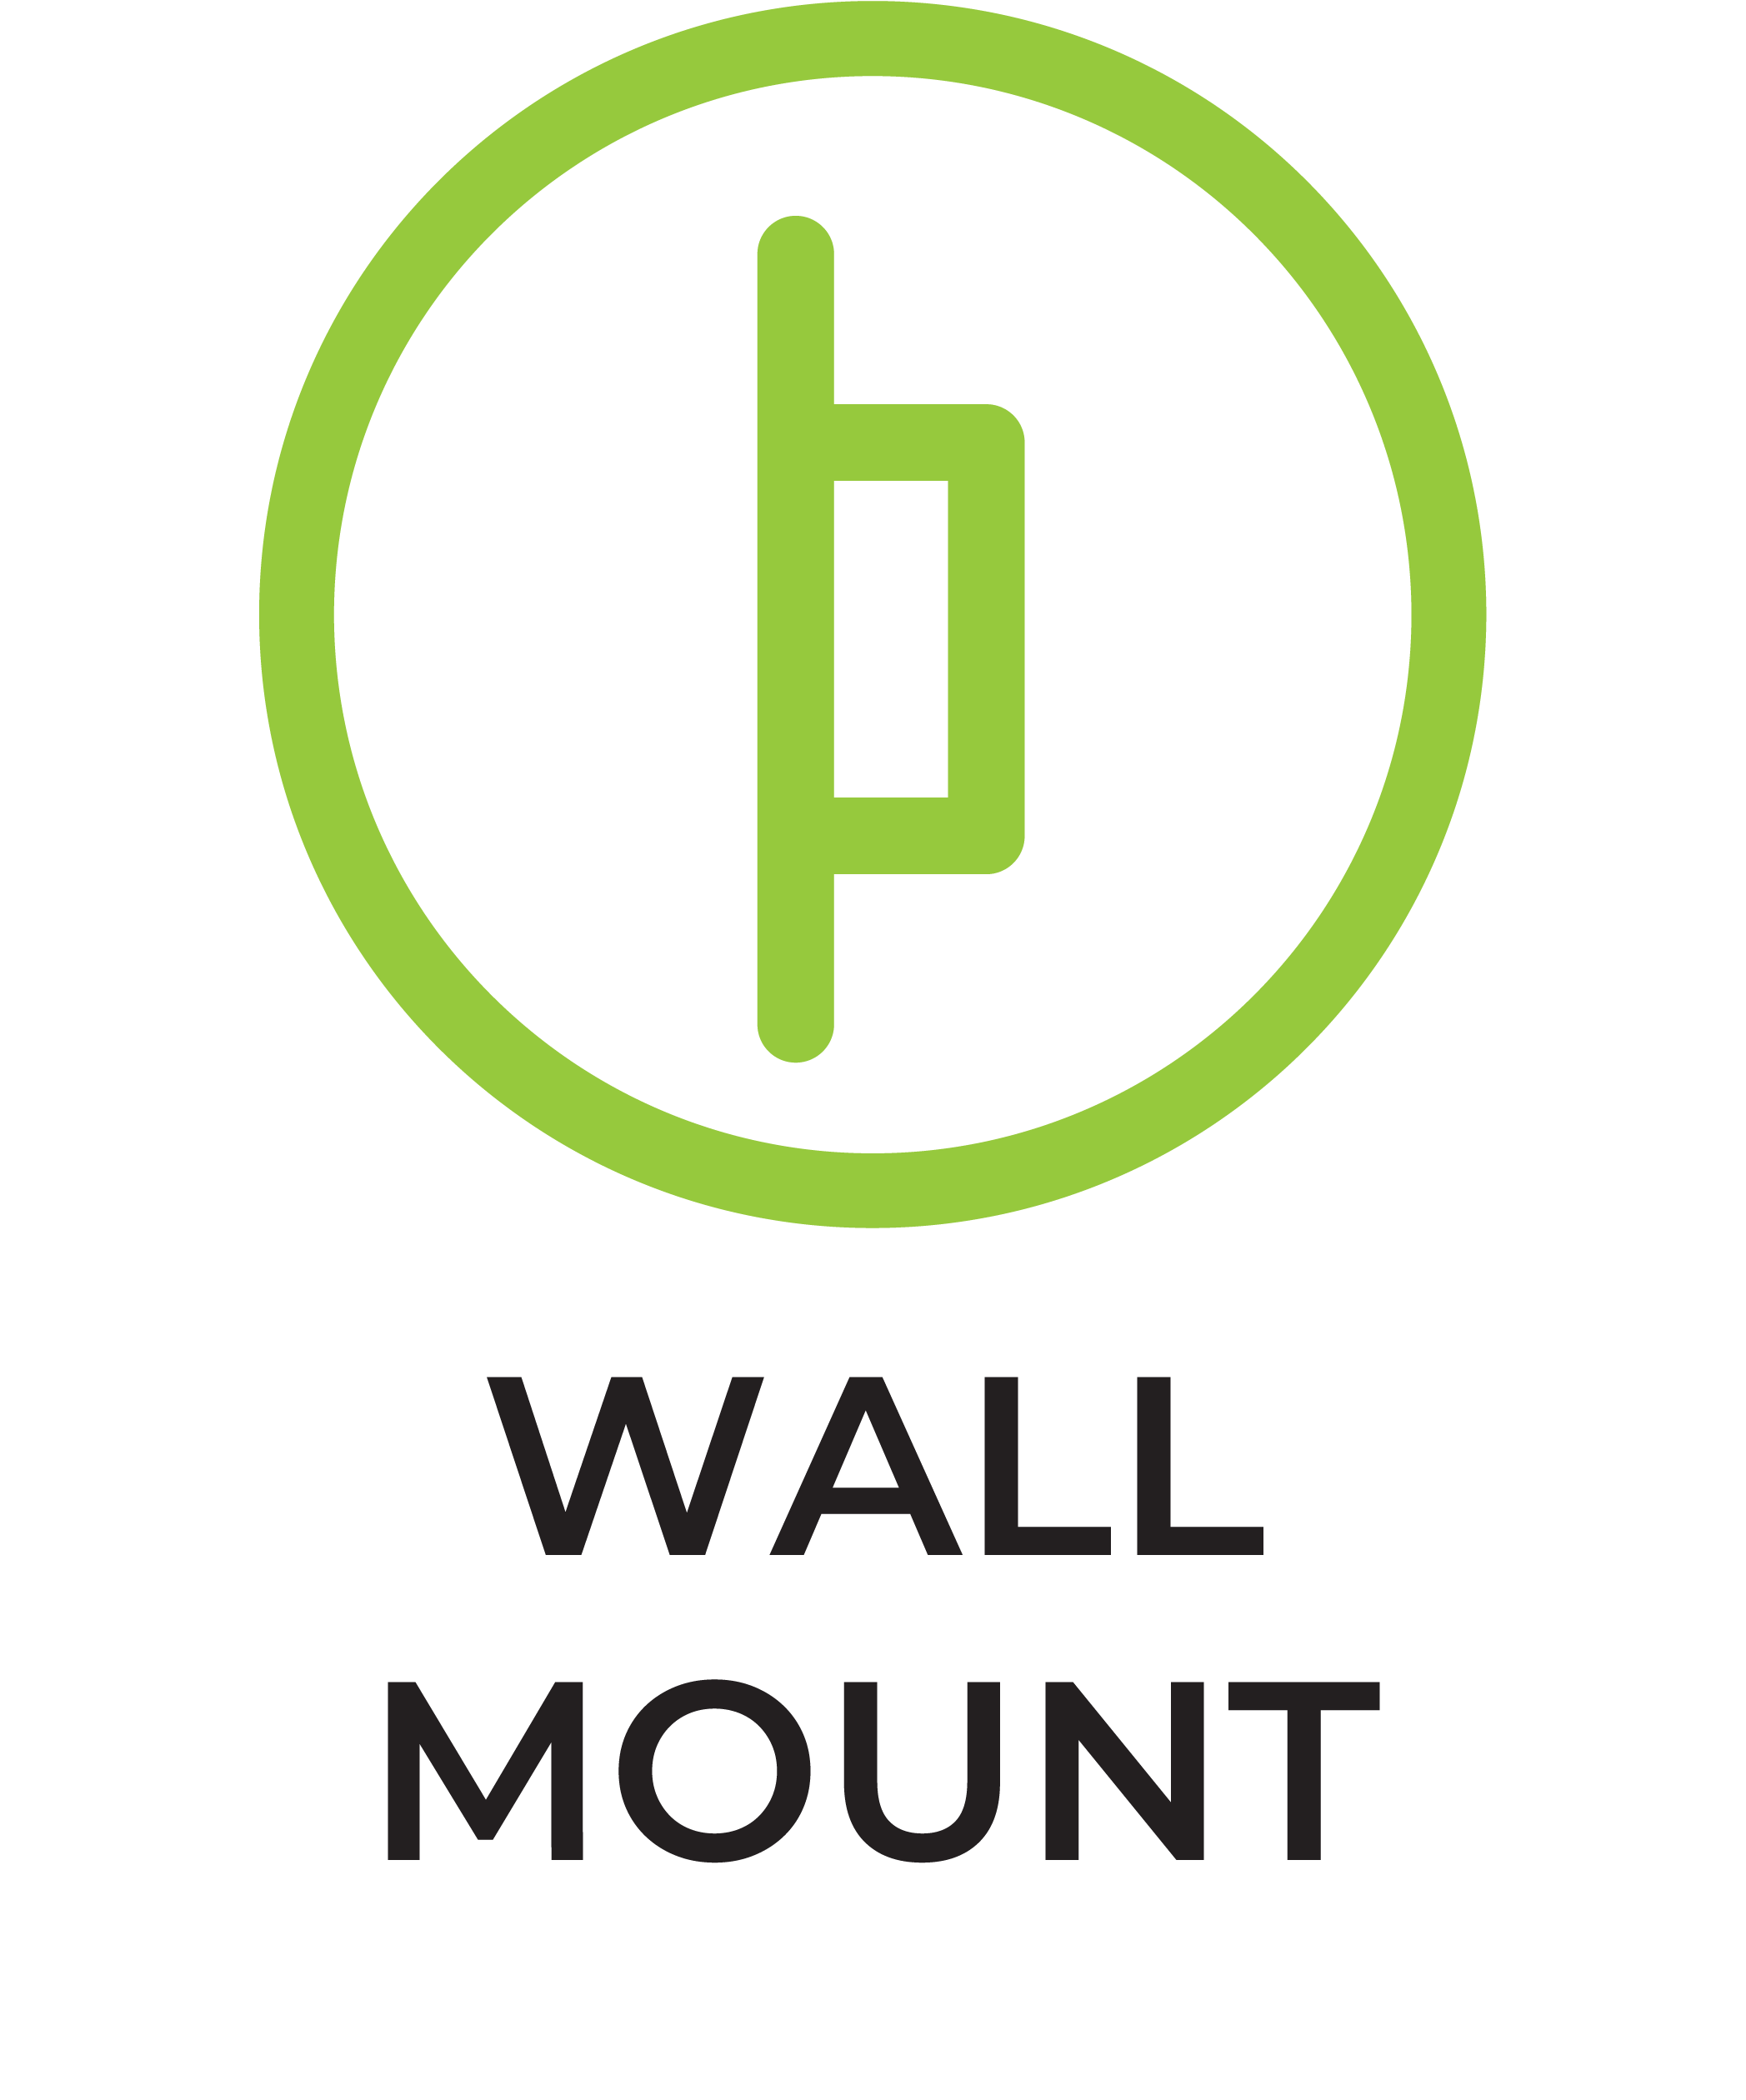 Wall mount